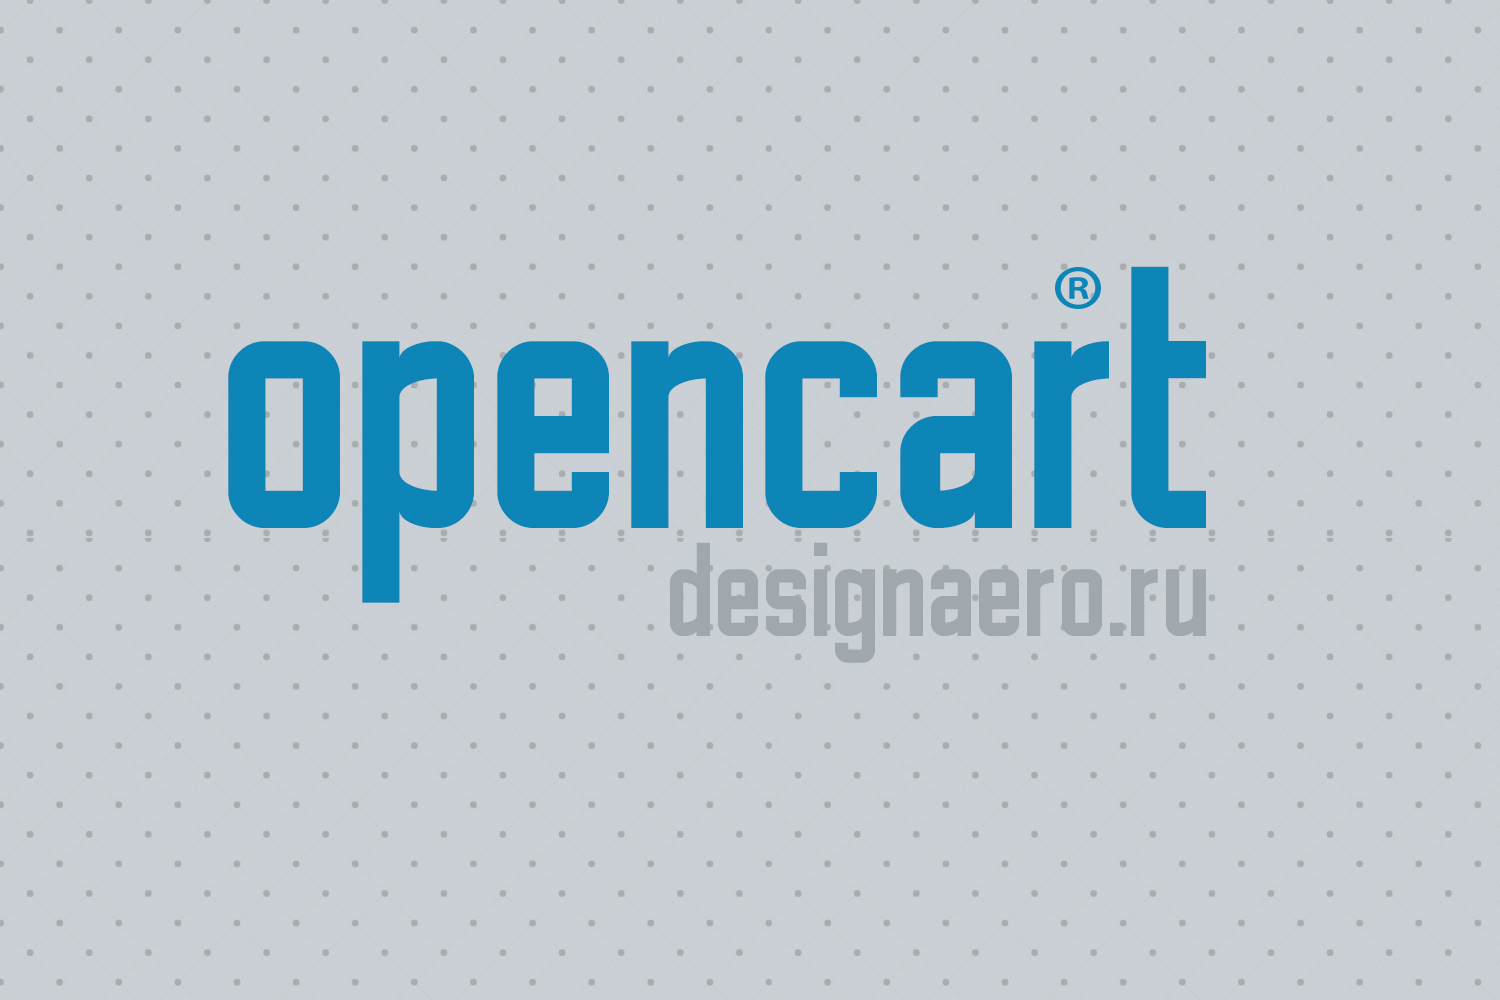 Создание вкладок (табов) в статичных текстовых страницах Opencart 2